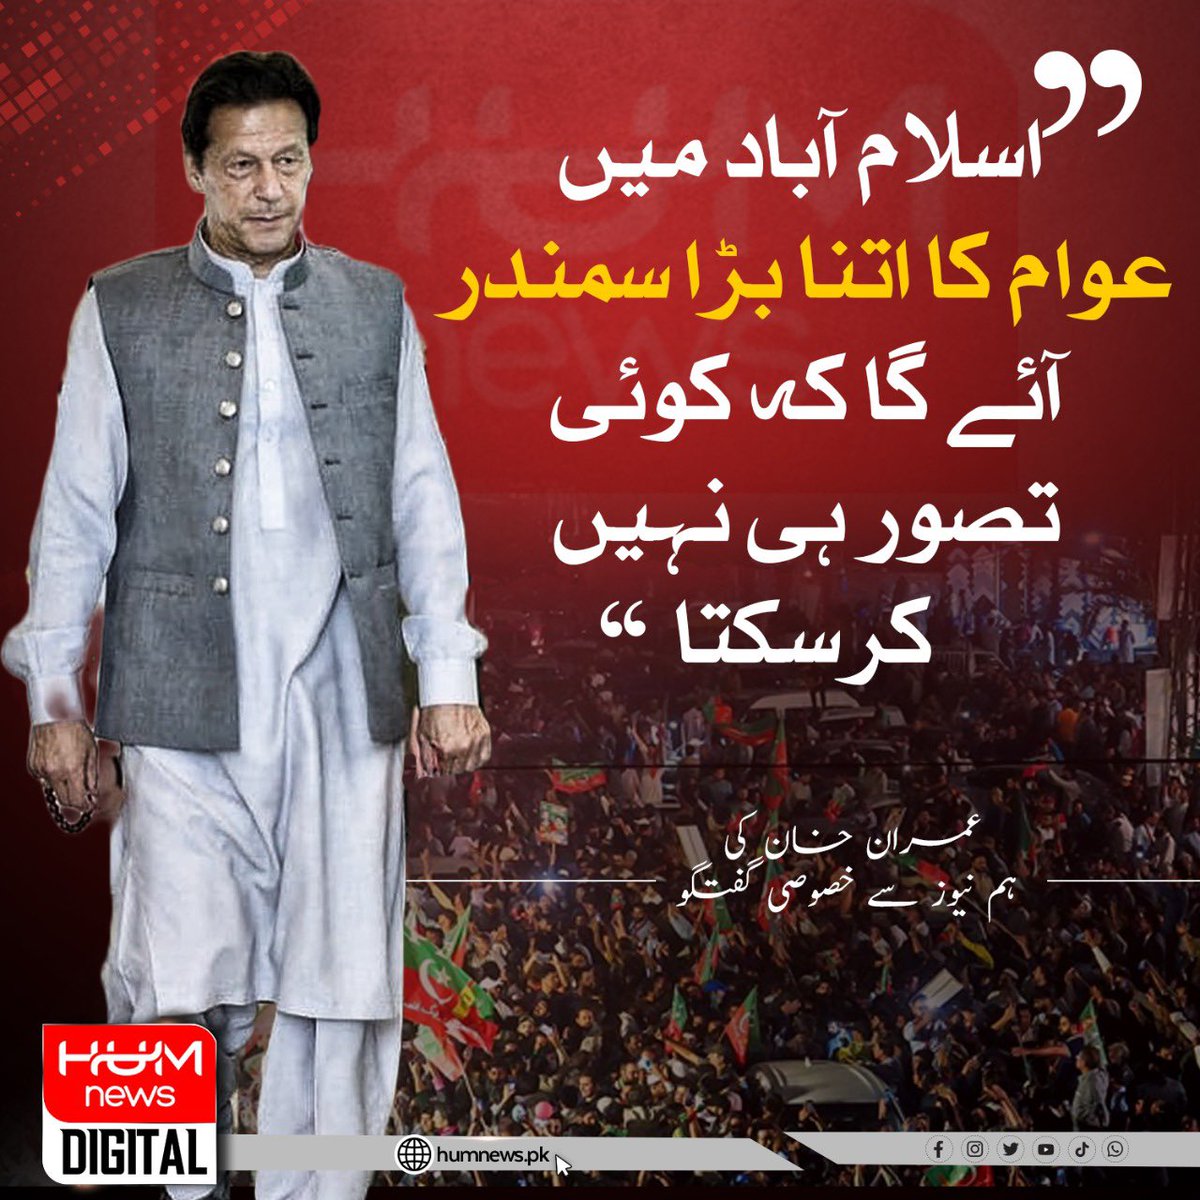 'اسلام آباد میں عوام کا اتنا بڑا سمندر آئے گا کہ کوئی تصور ہی نہیں کرسکتا'، عمران خان کی ہم نیوز سے خصوصی گفتگو۔